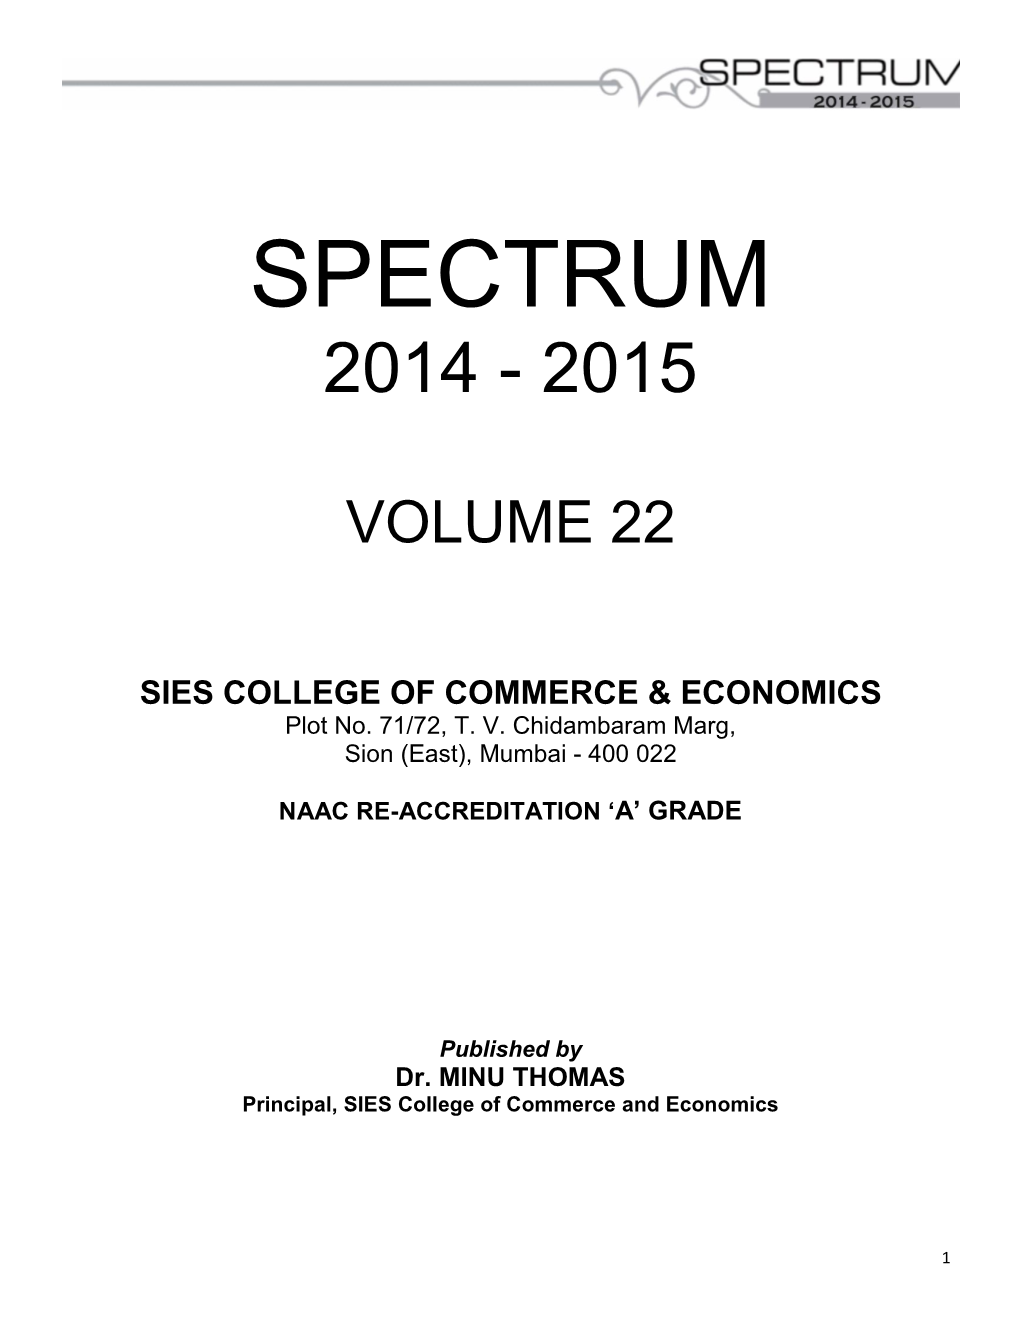 Spectrum 2014-2015